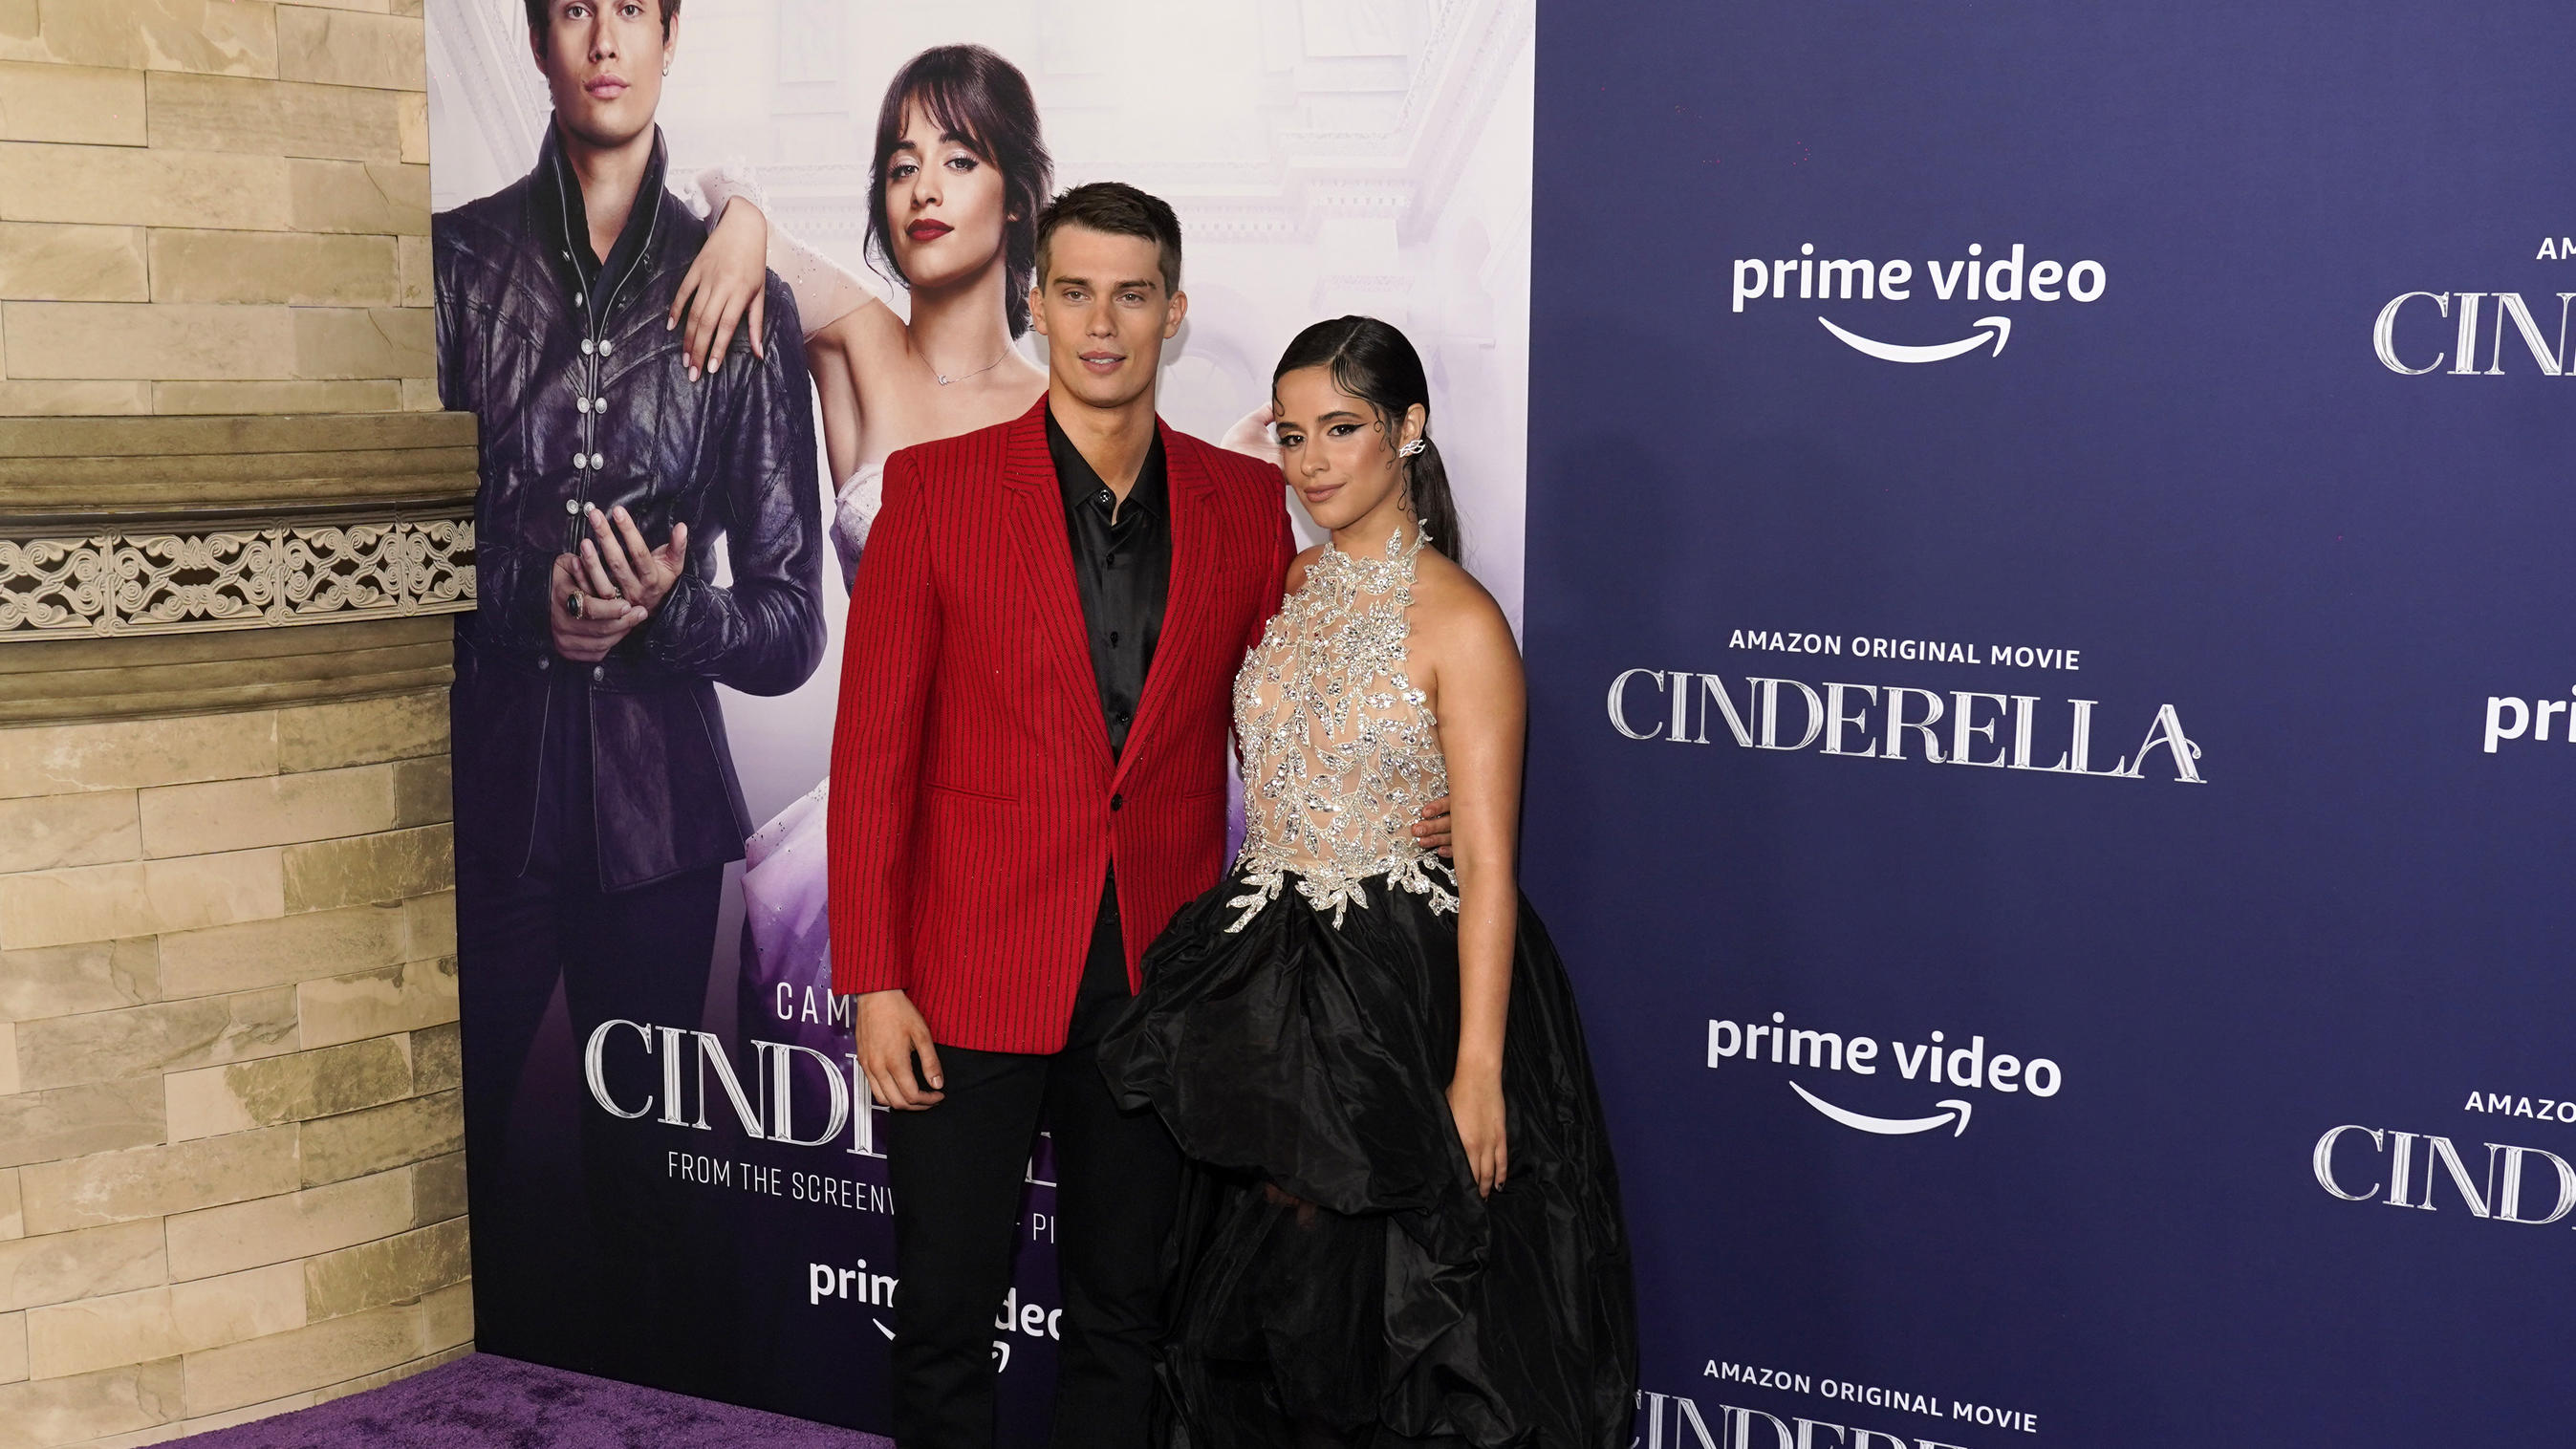 Camila Cabello spielt "Cinderella" in einem neuen Film. Ihr Prinz ist Nicholas Galitzine.